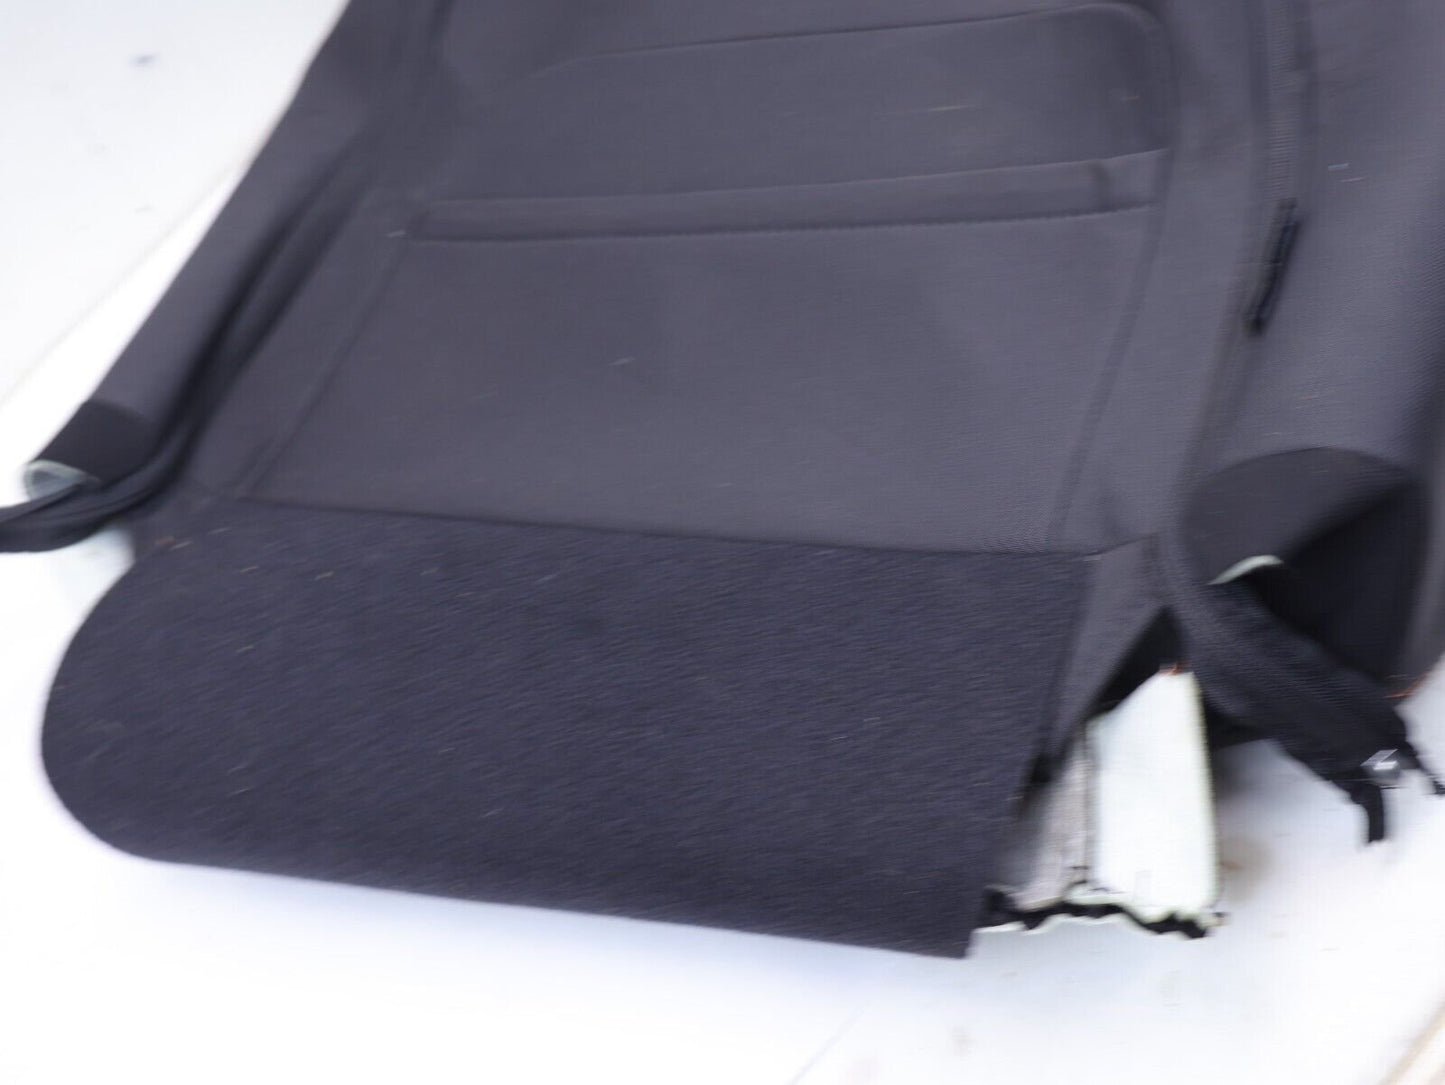 2021 Subaru Crosstrek Passenger Front Seat Cover UPPER TOP Skin Black OEM